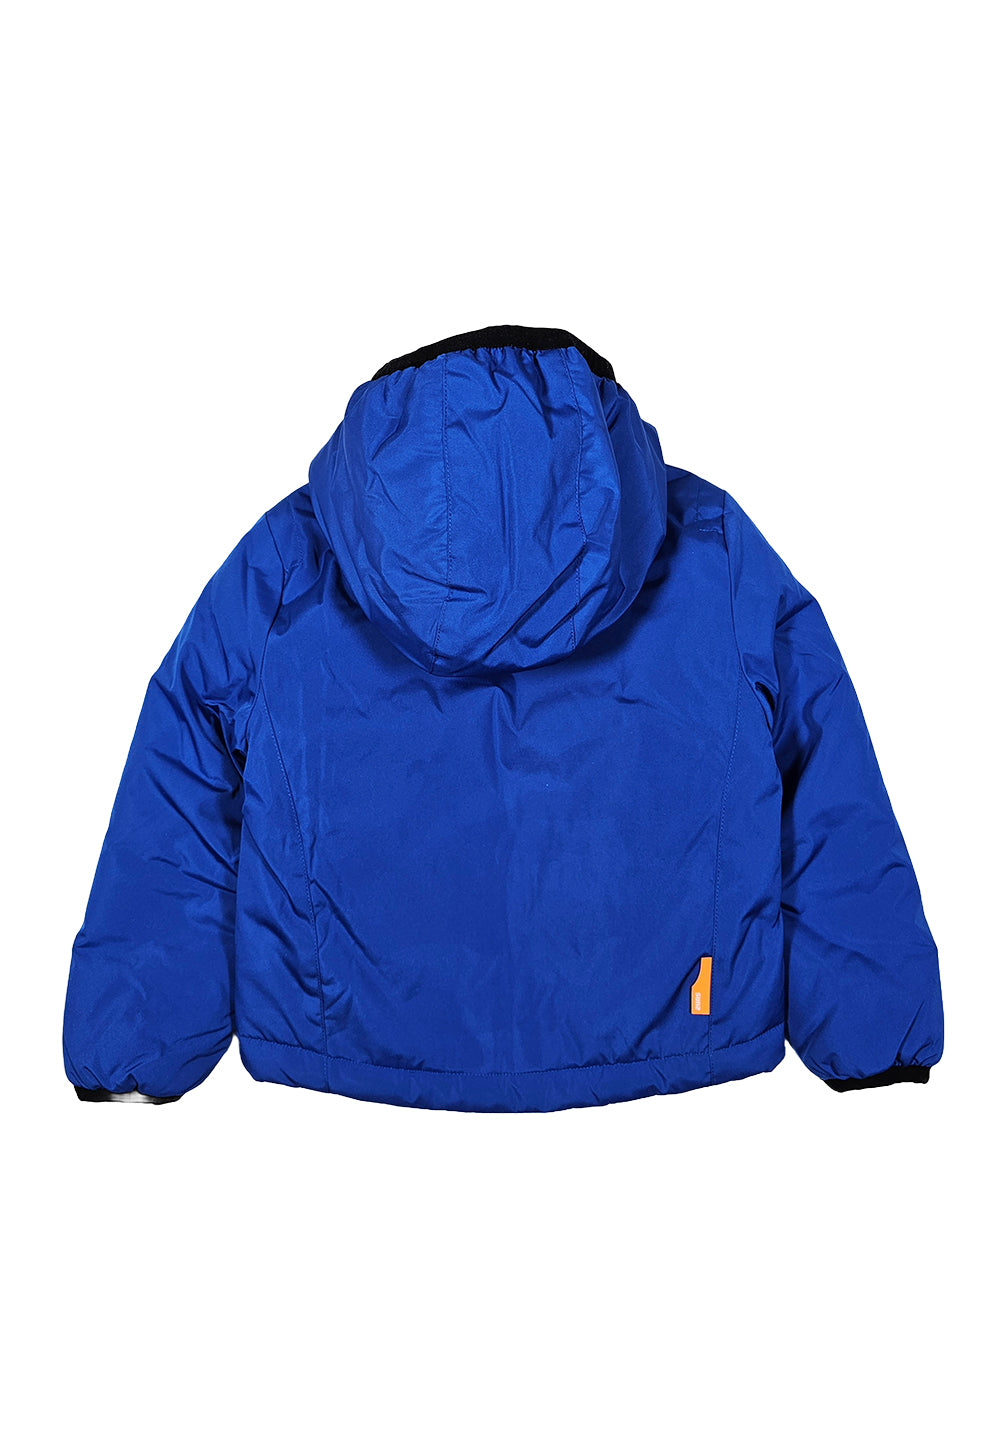 Blue jacket for boy